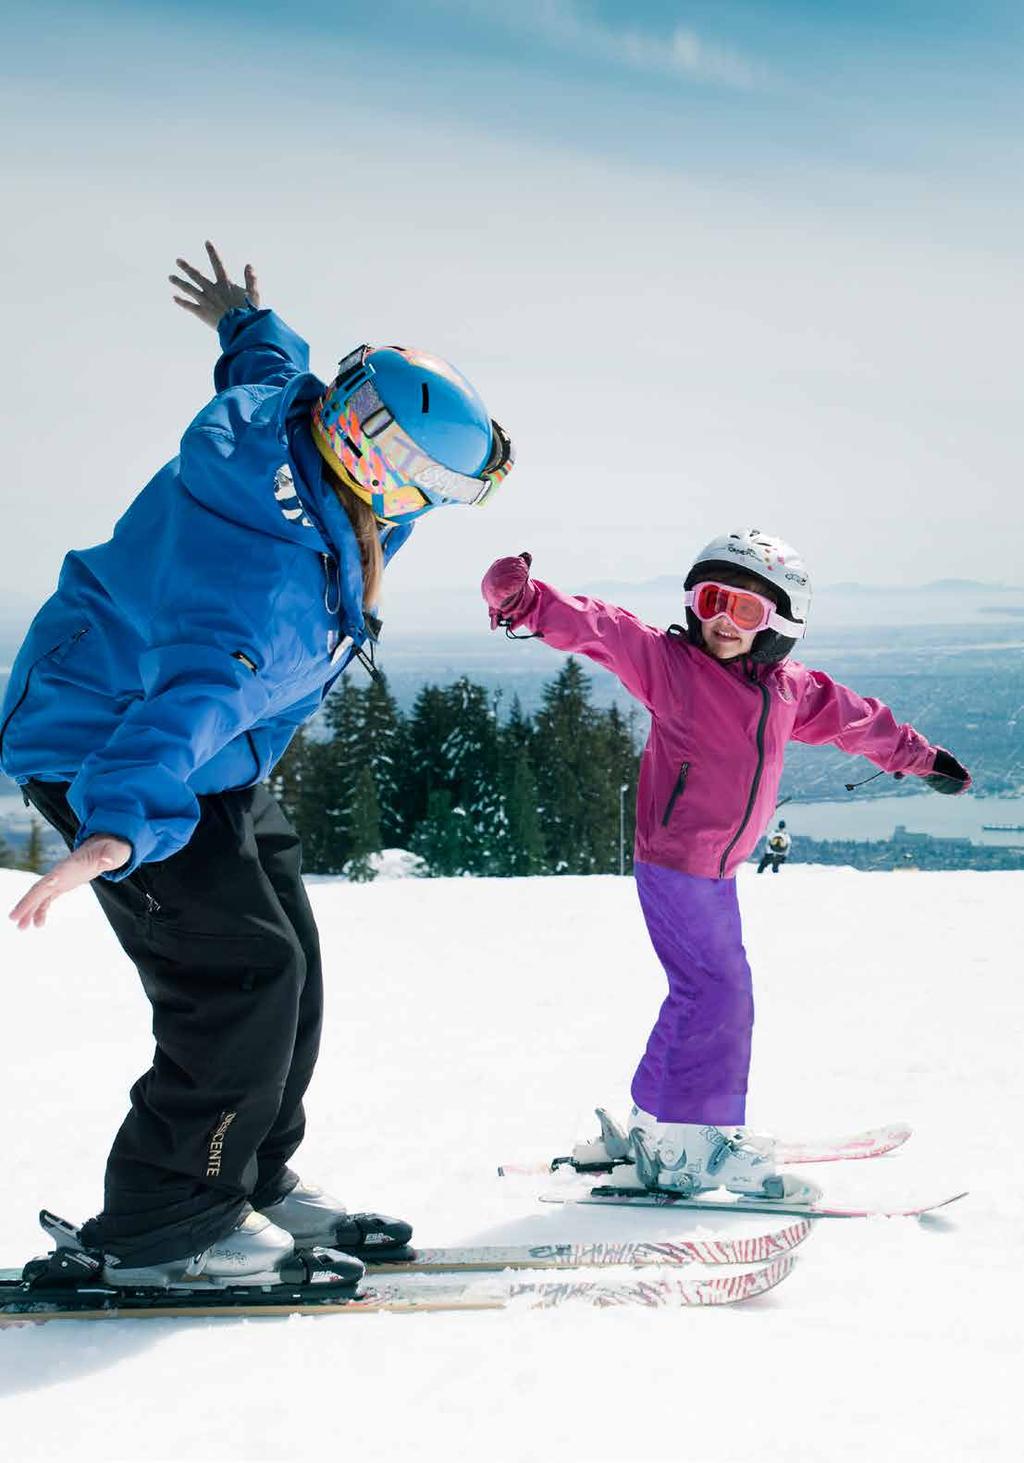 1-HOUR Child (3-6) Private Lesson Ski/Snowboard 80 To book please call 604.980.9311.